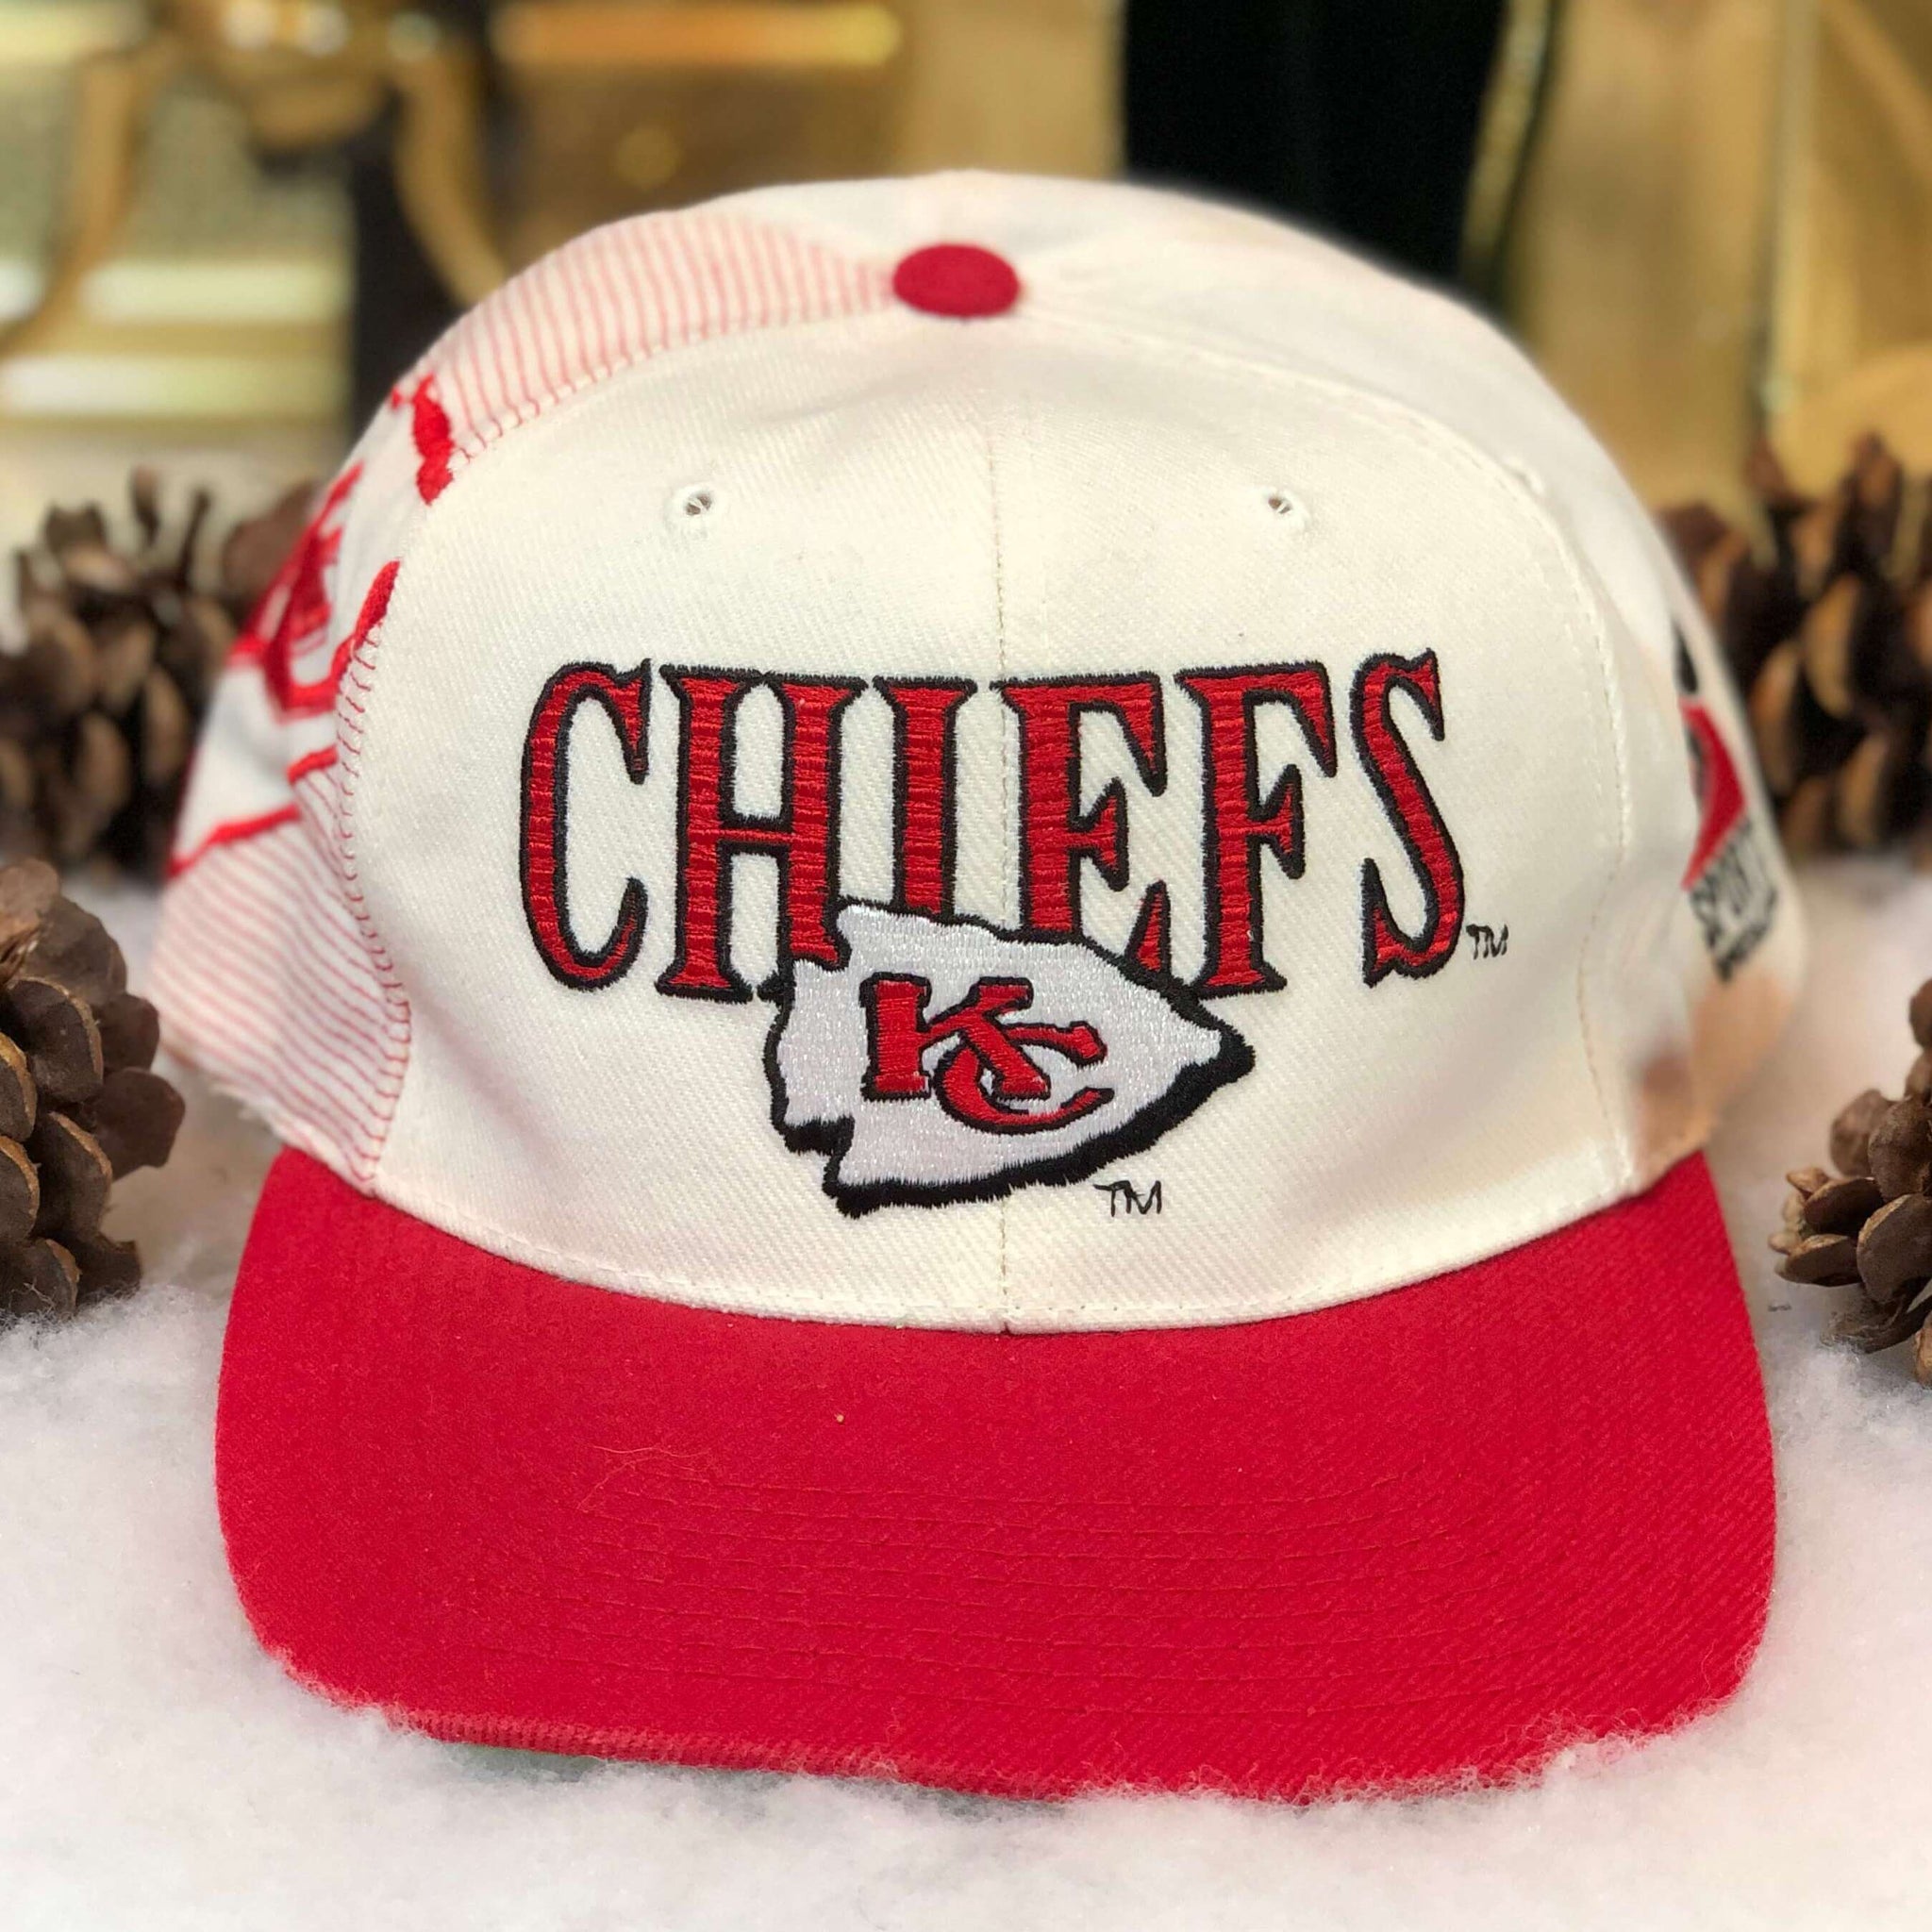 Vintage NFL Kansas City Chiefs Sports Specialties Laser Snapback Hat